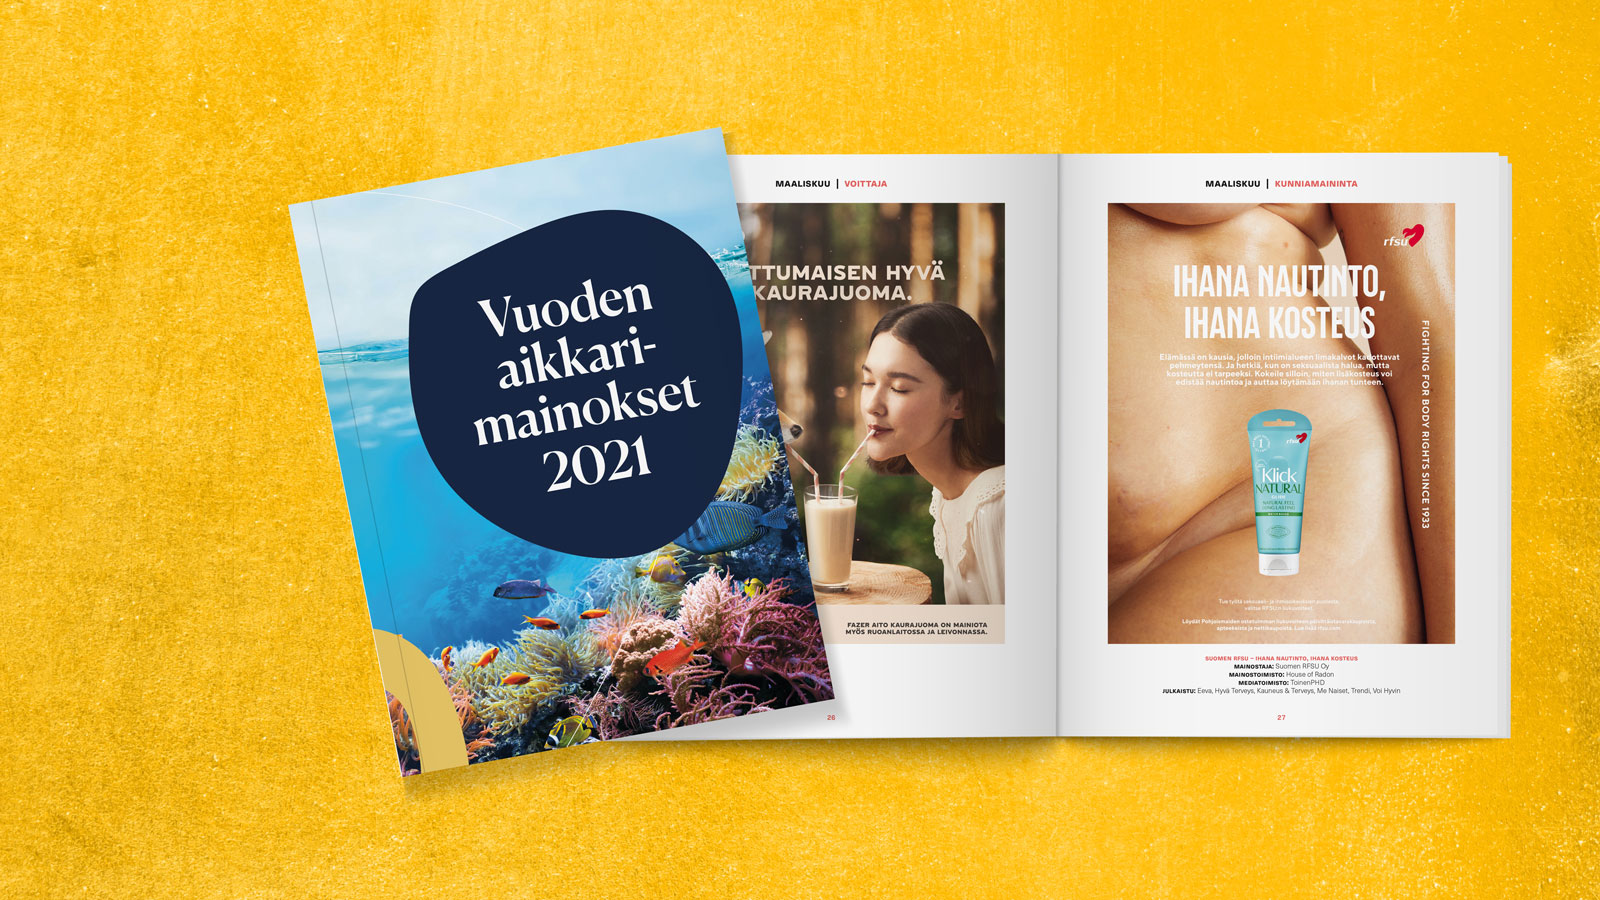 Vuoden aikkarimainokset 2021 -julkaisuja keltaisella taustalla.  